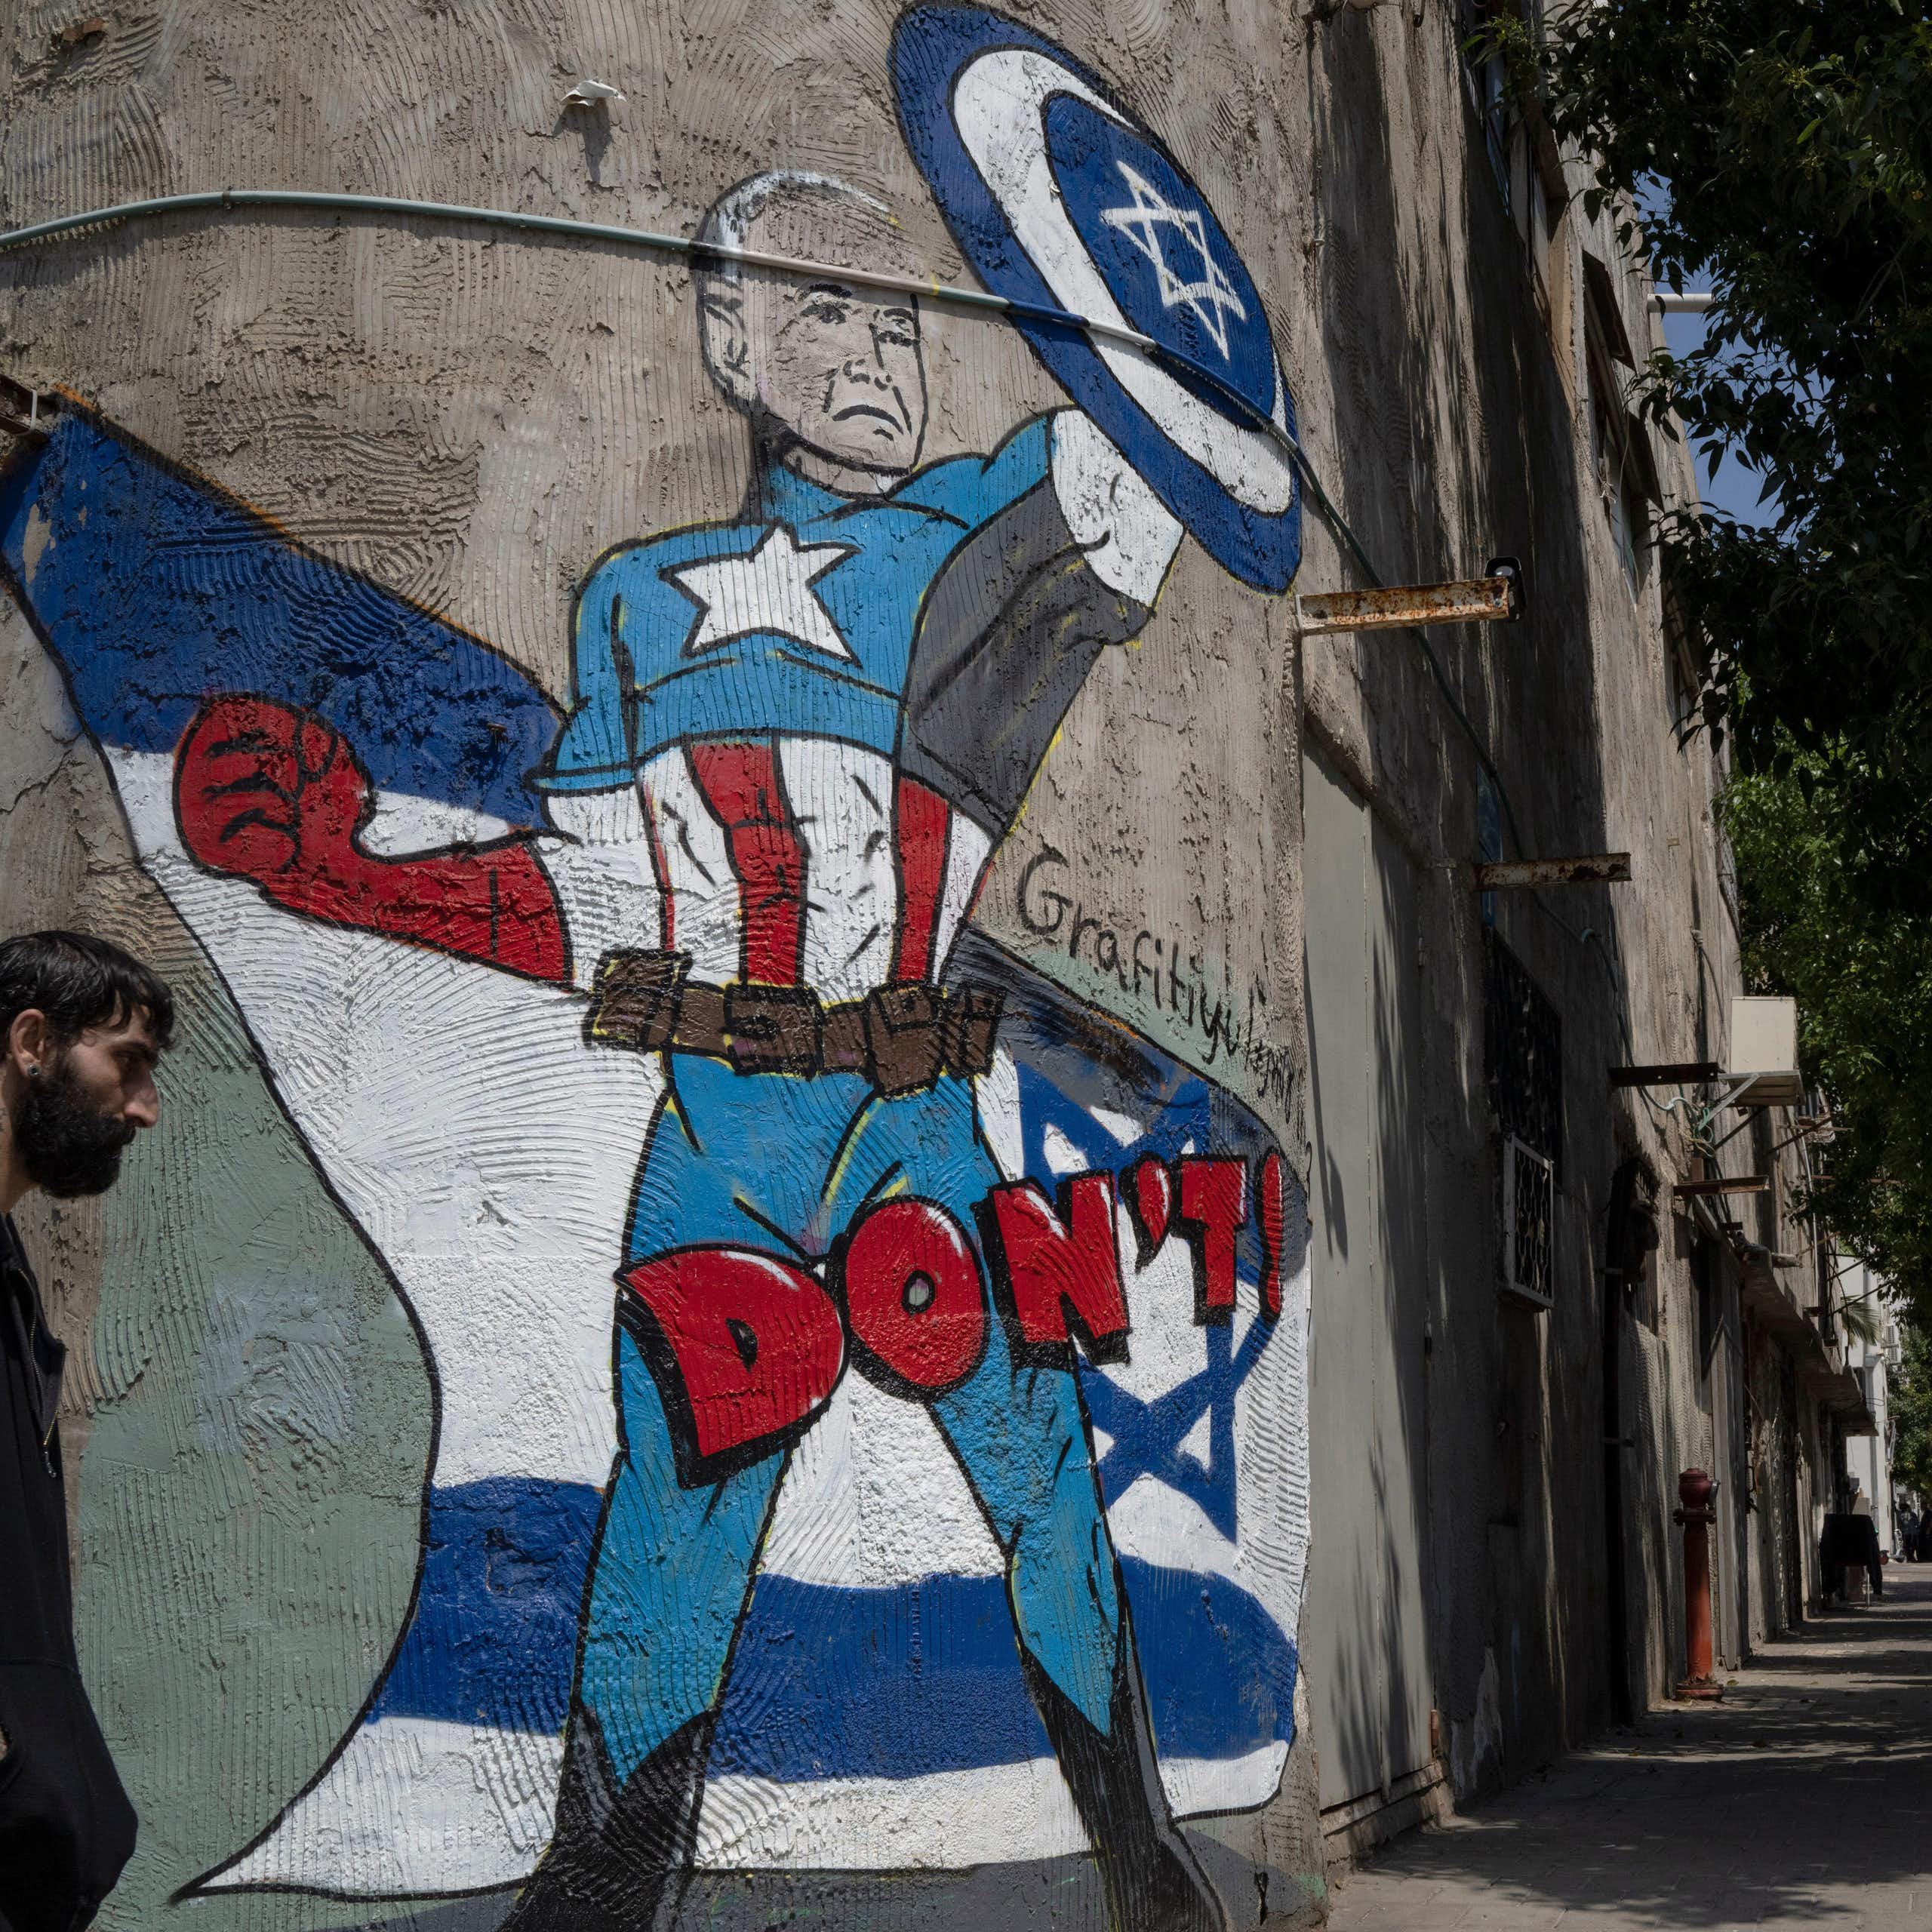 A mural in Tel Aviv depicts US president Joe Biden as a superhero defending Israel.